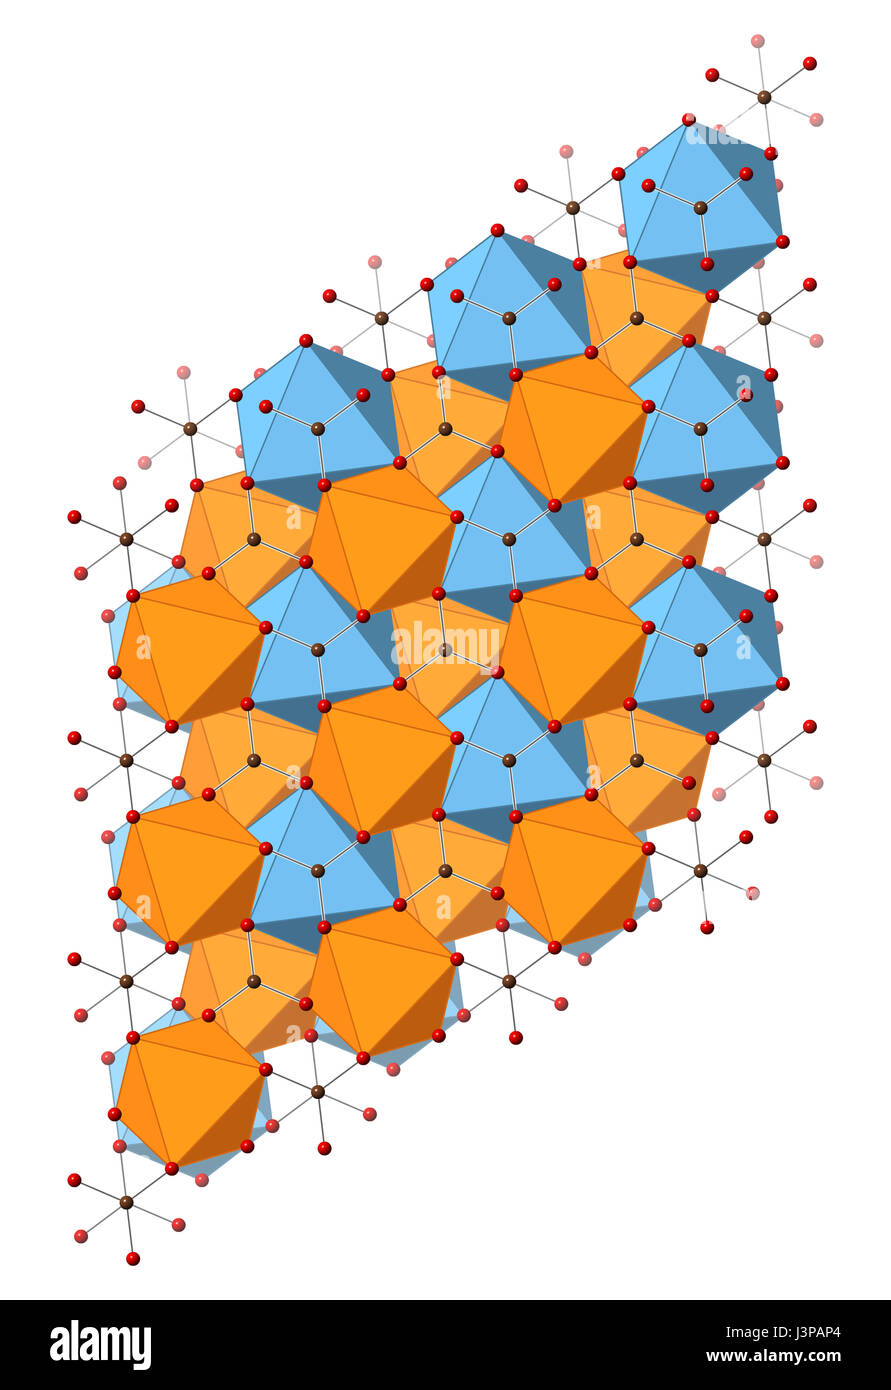 La Dolomite (carbonate de magnésium, calcium CaMg(CO3)2) minéral, structure cristalline. Illustré des atomes les sphères et les polyèdres. Banque D'Images